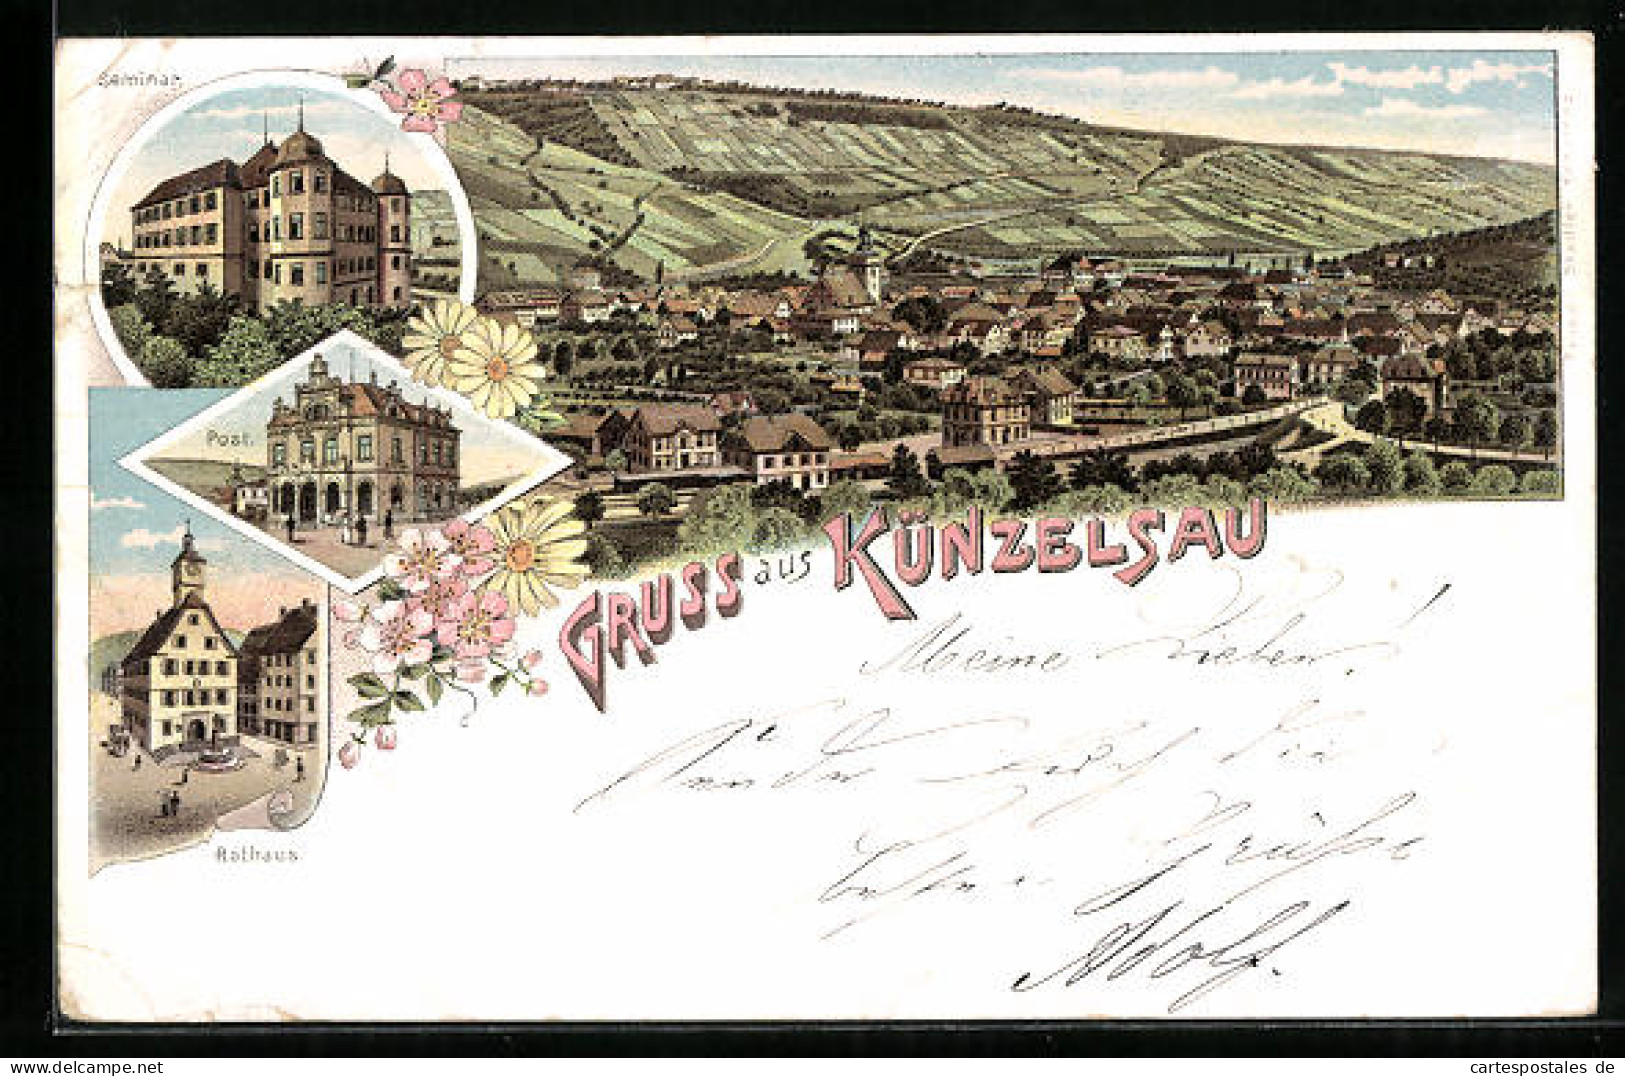 Lithographie Künzelsau, Seminar, Post, Rathaus  - Kuenzelsau